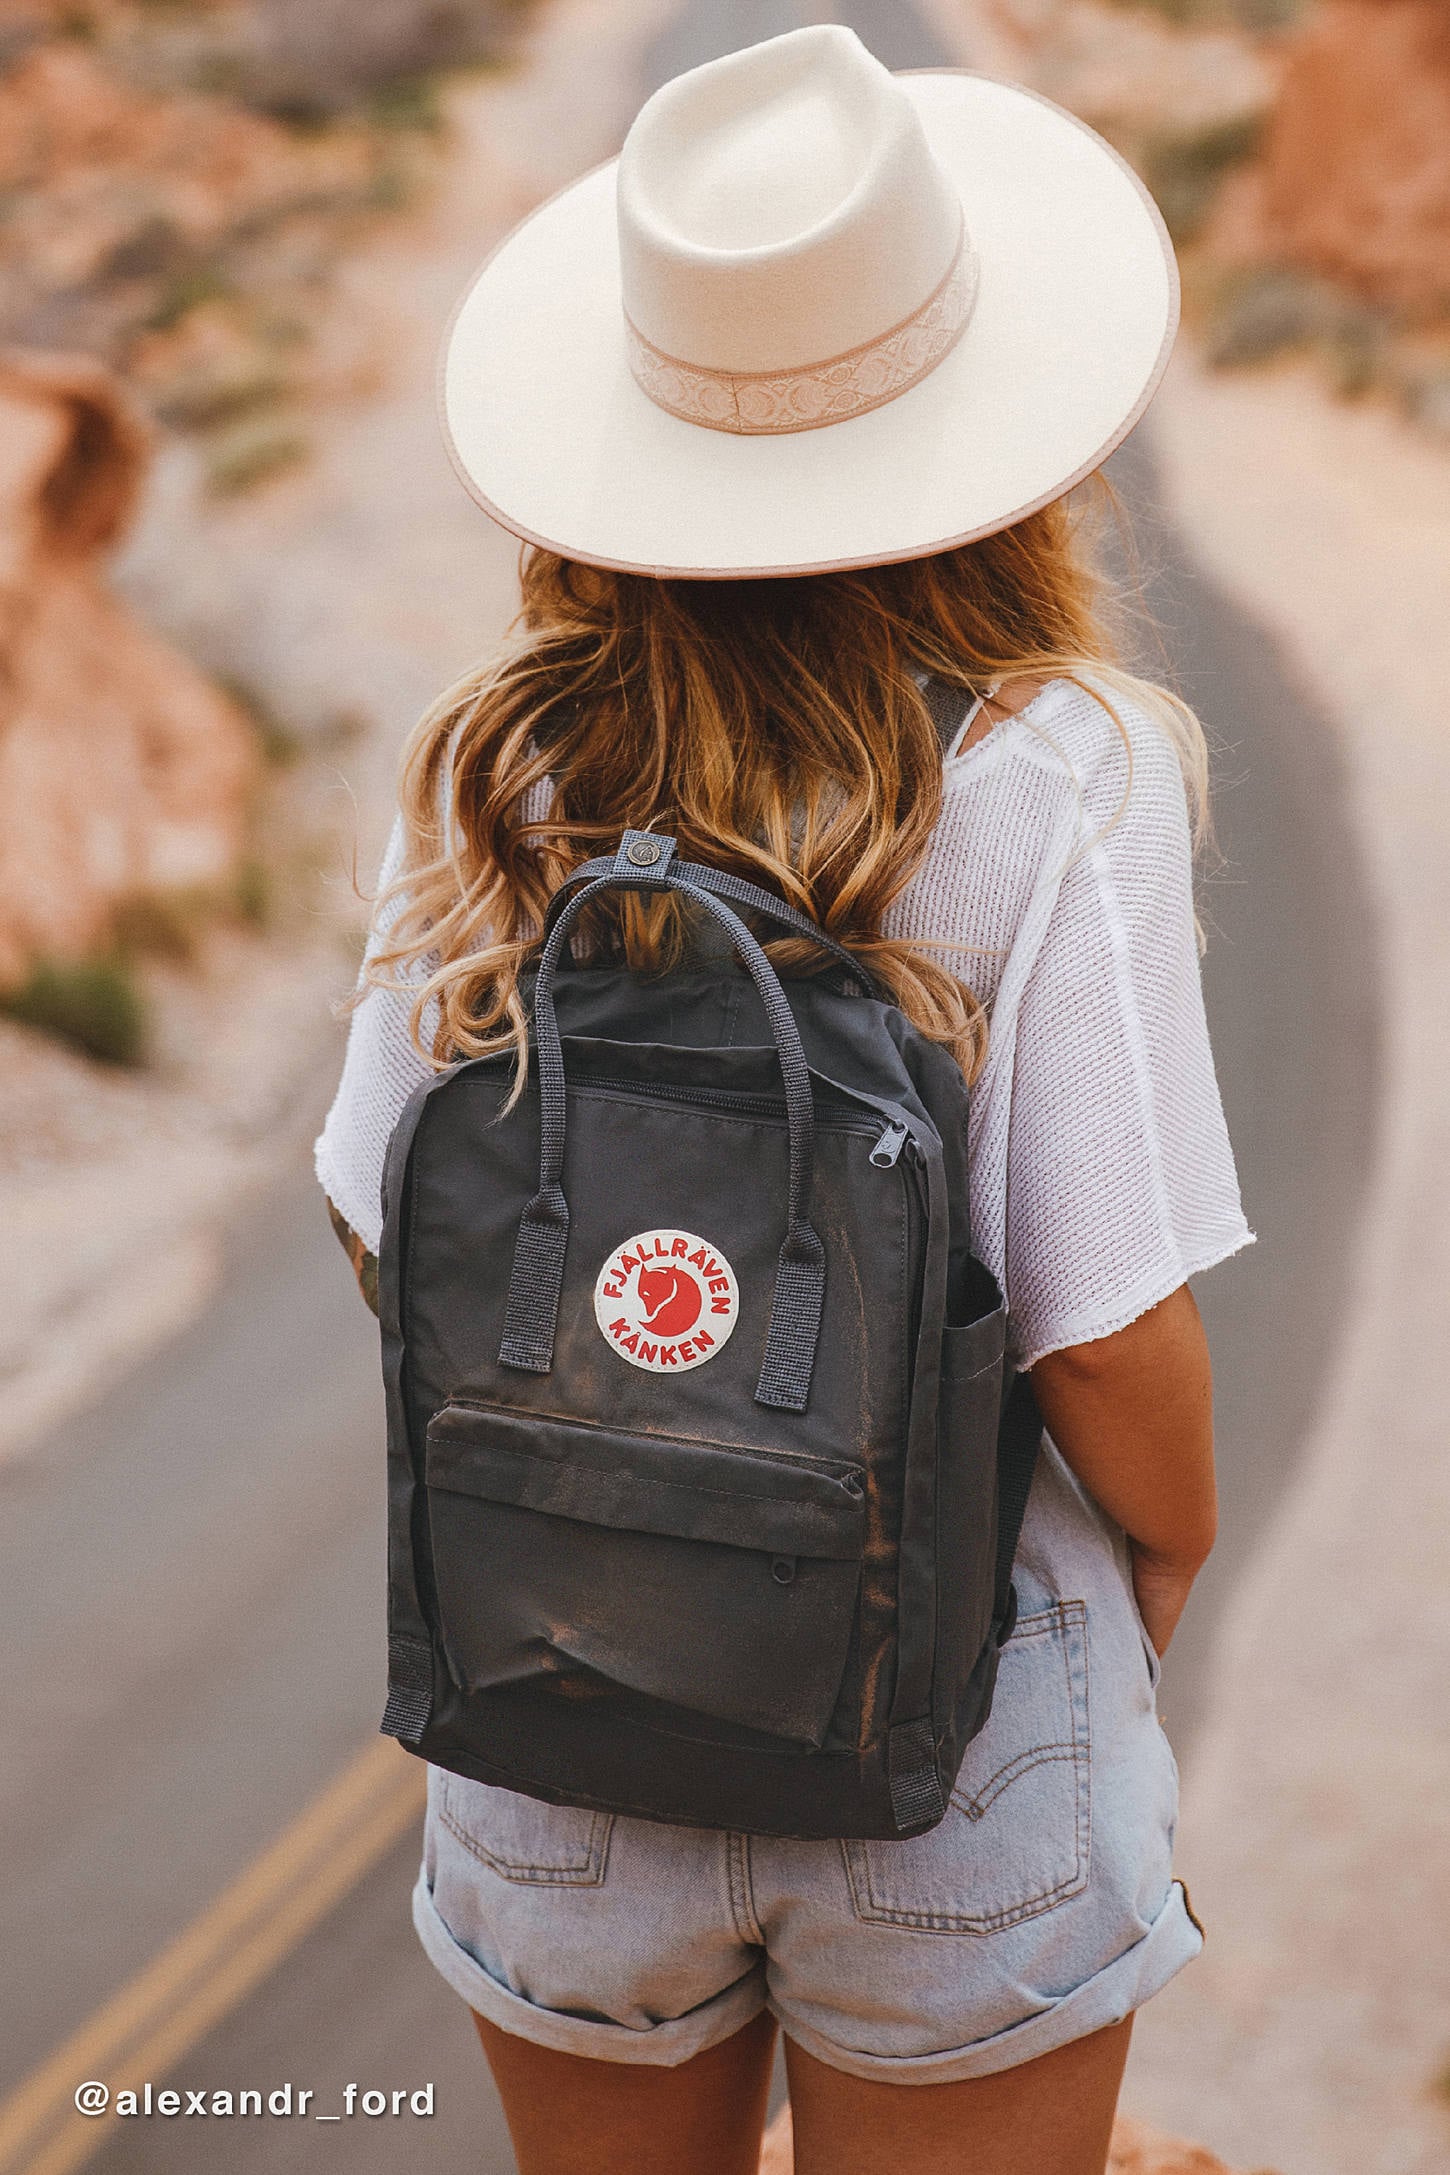 NewOxygen Beagles Fashion Shoulder Bag Rucksack PU Leather Women Girls Ladies Backpack Travel Bag 